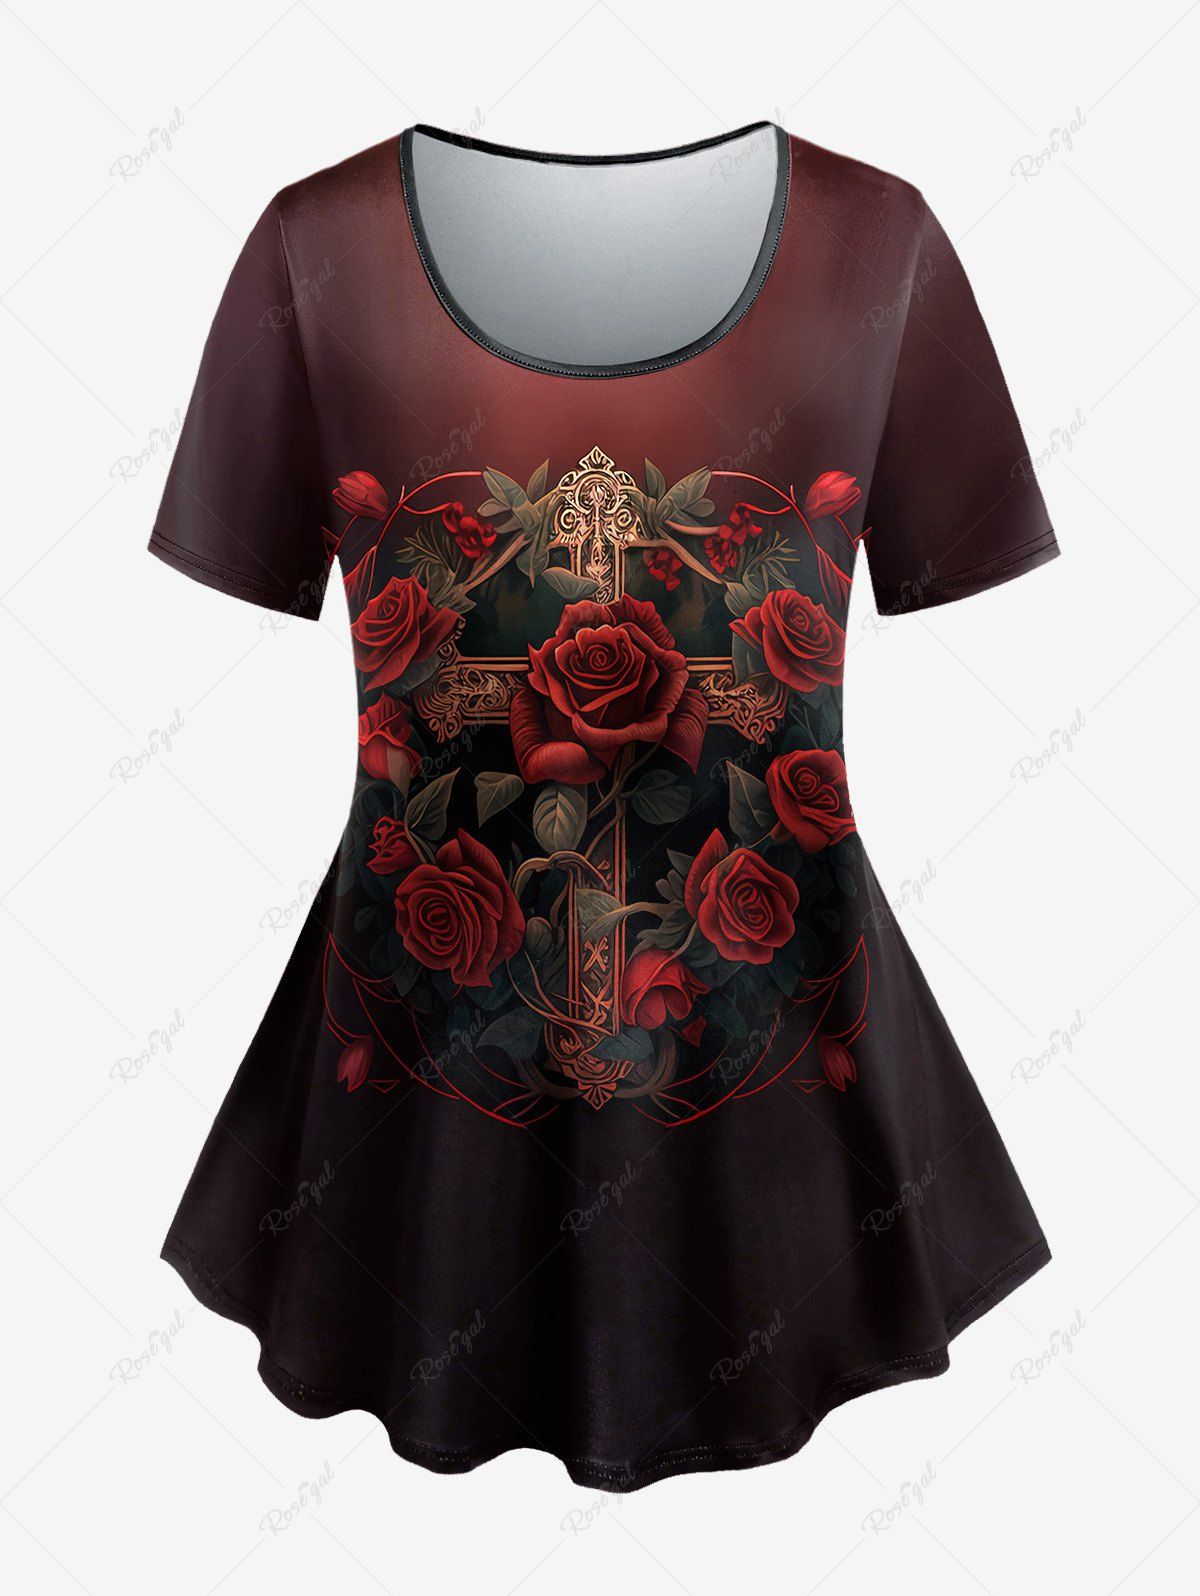 Unique Gothic Rose Cross Print Ombre T-shirt  